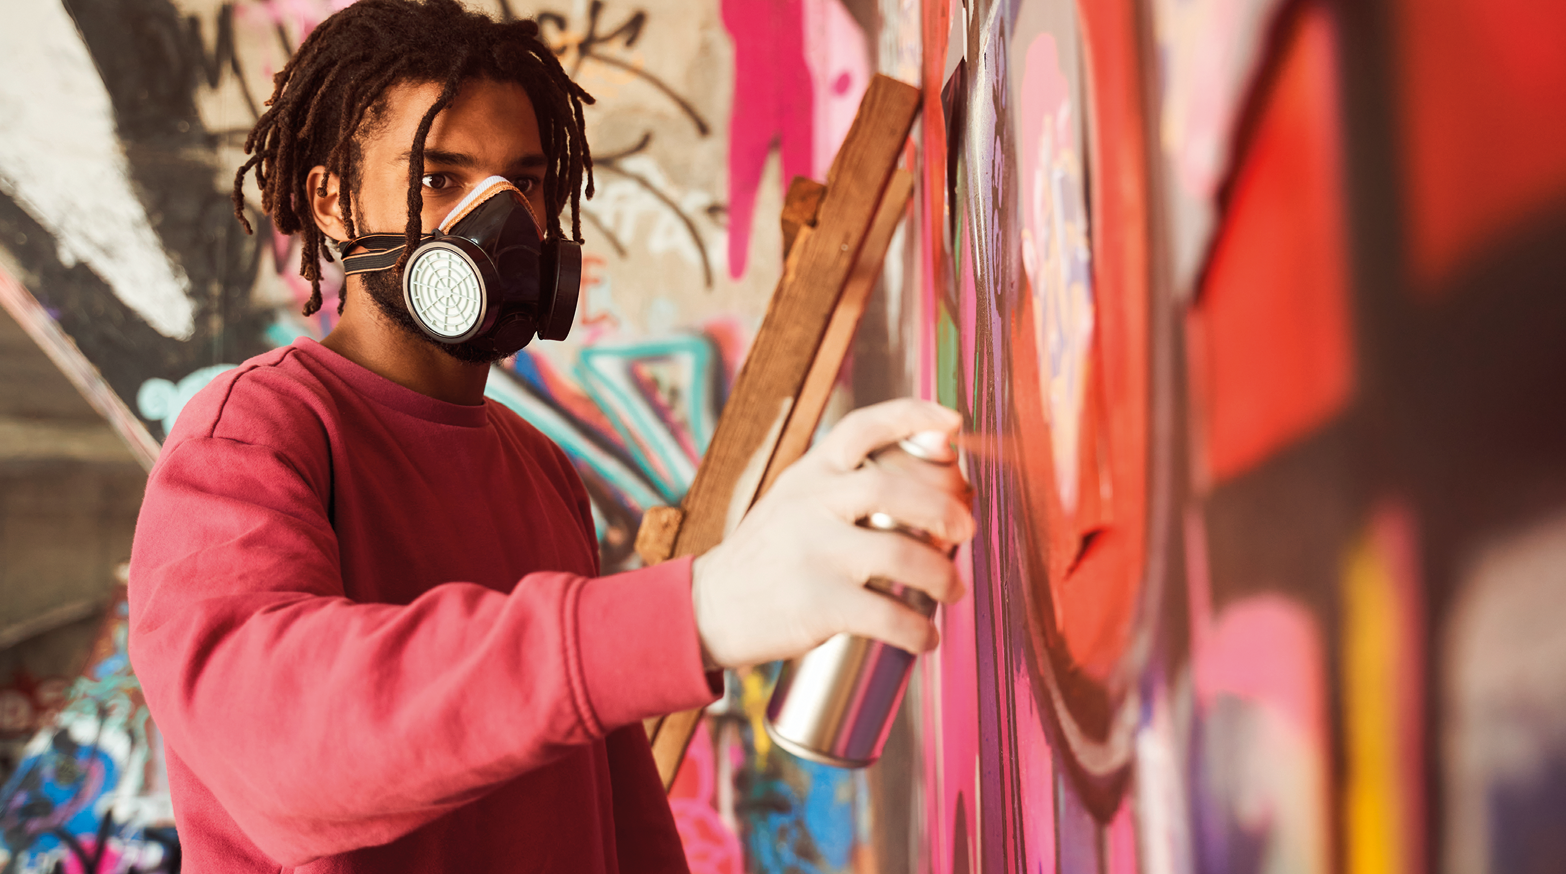 Fotografia. Um homem visto da cintura para cima pintando um muro com um tubo cinza de spray. Ele tem cabelos pretos trançados, de blusa de mangas compridas em vermelho. No muro, tinta em rosa, preto e vermelho.